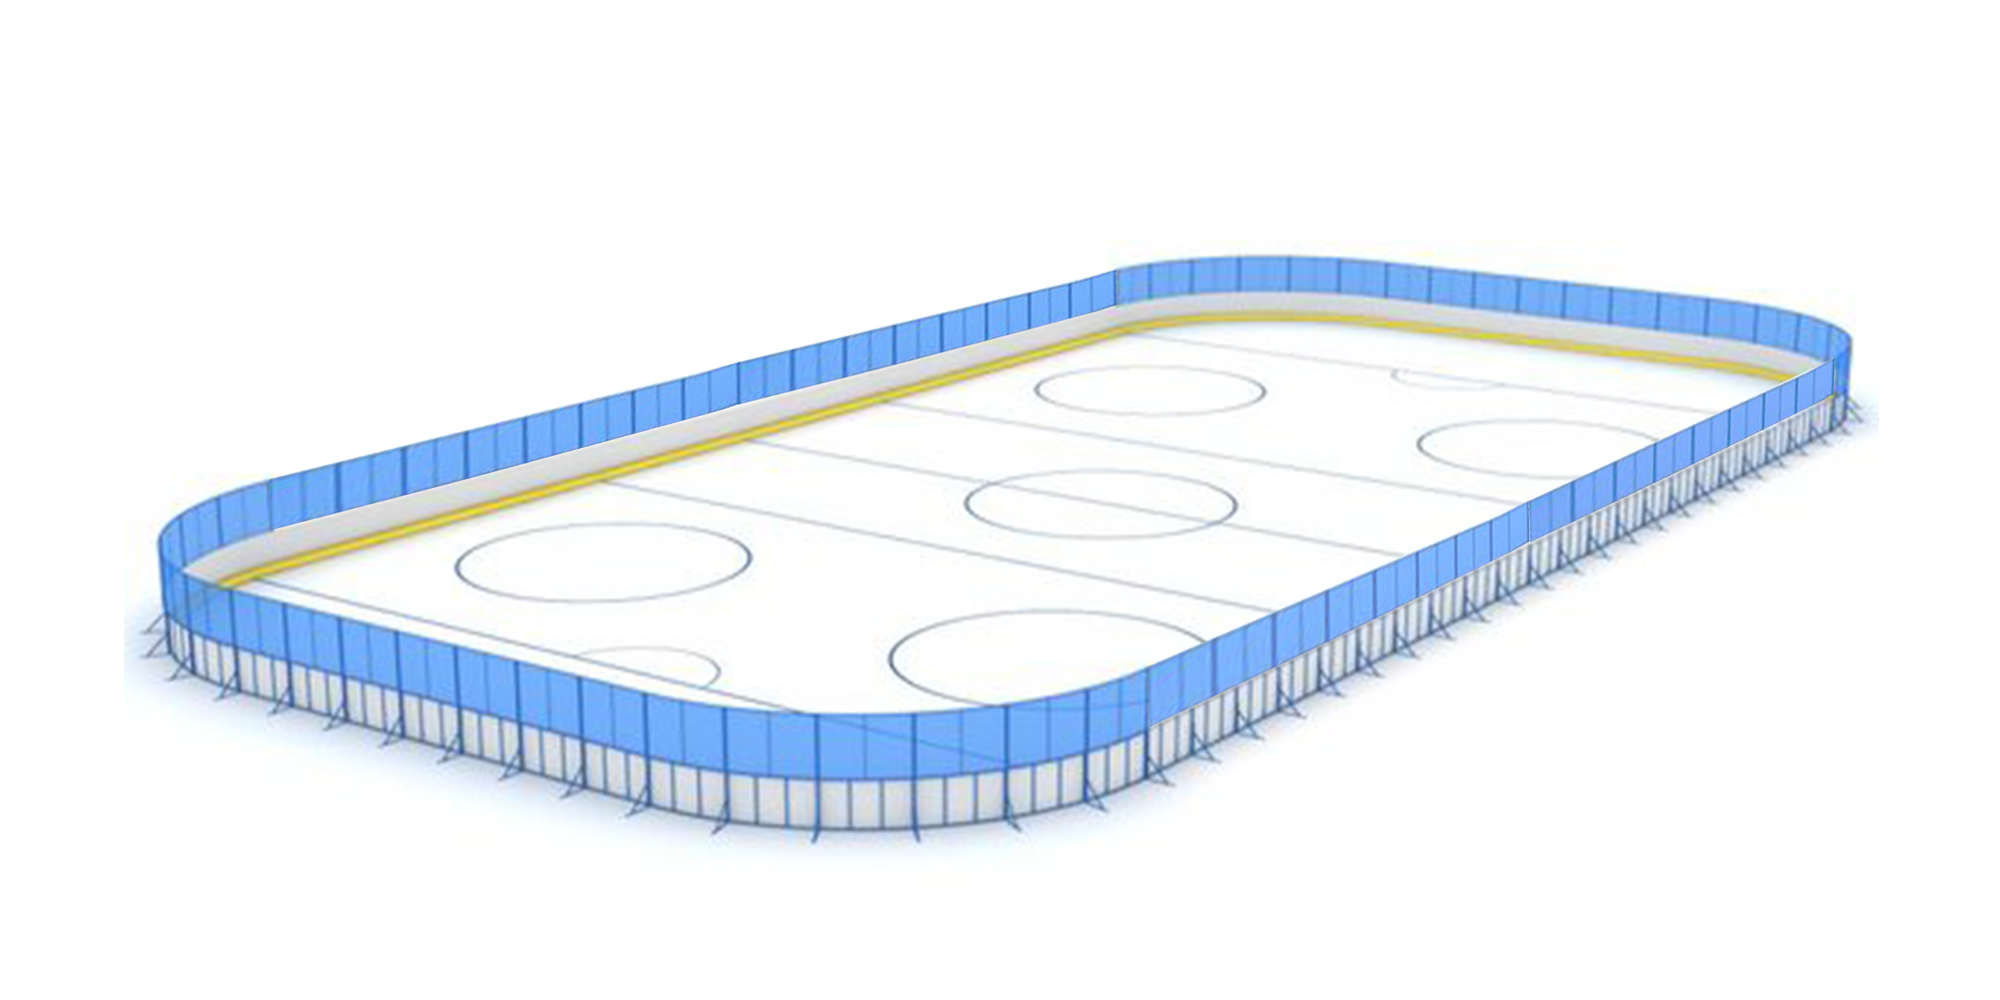 Хоккейная коробка 26 м х 56 м стеклопластик ограждение по кругу